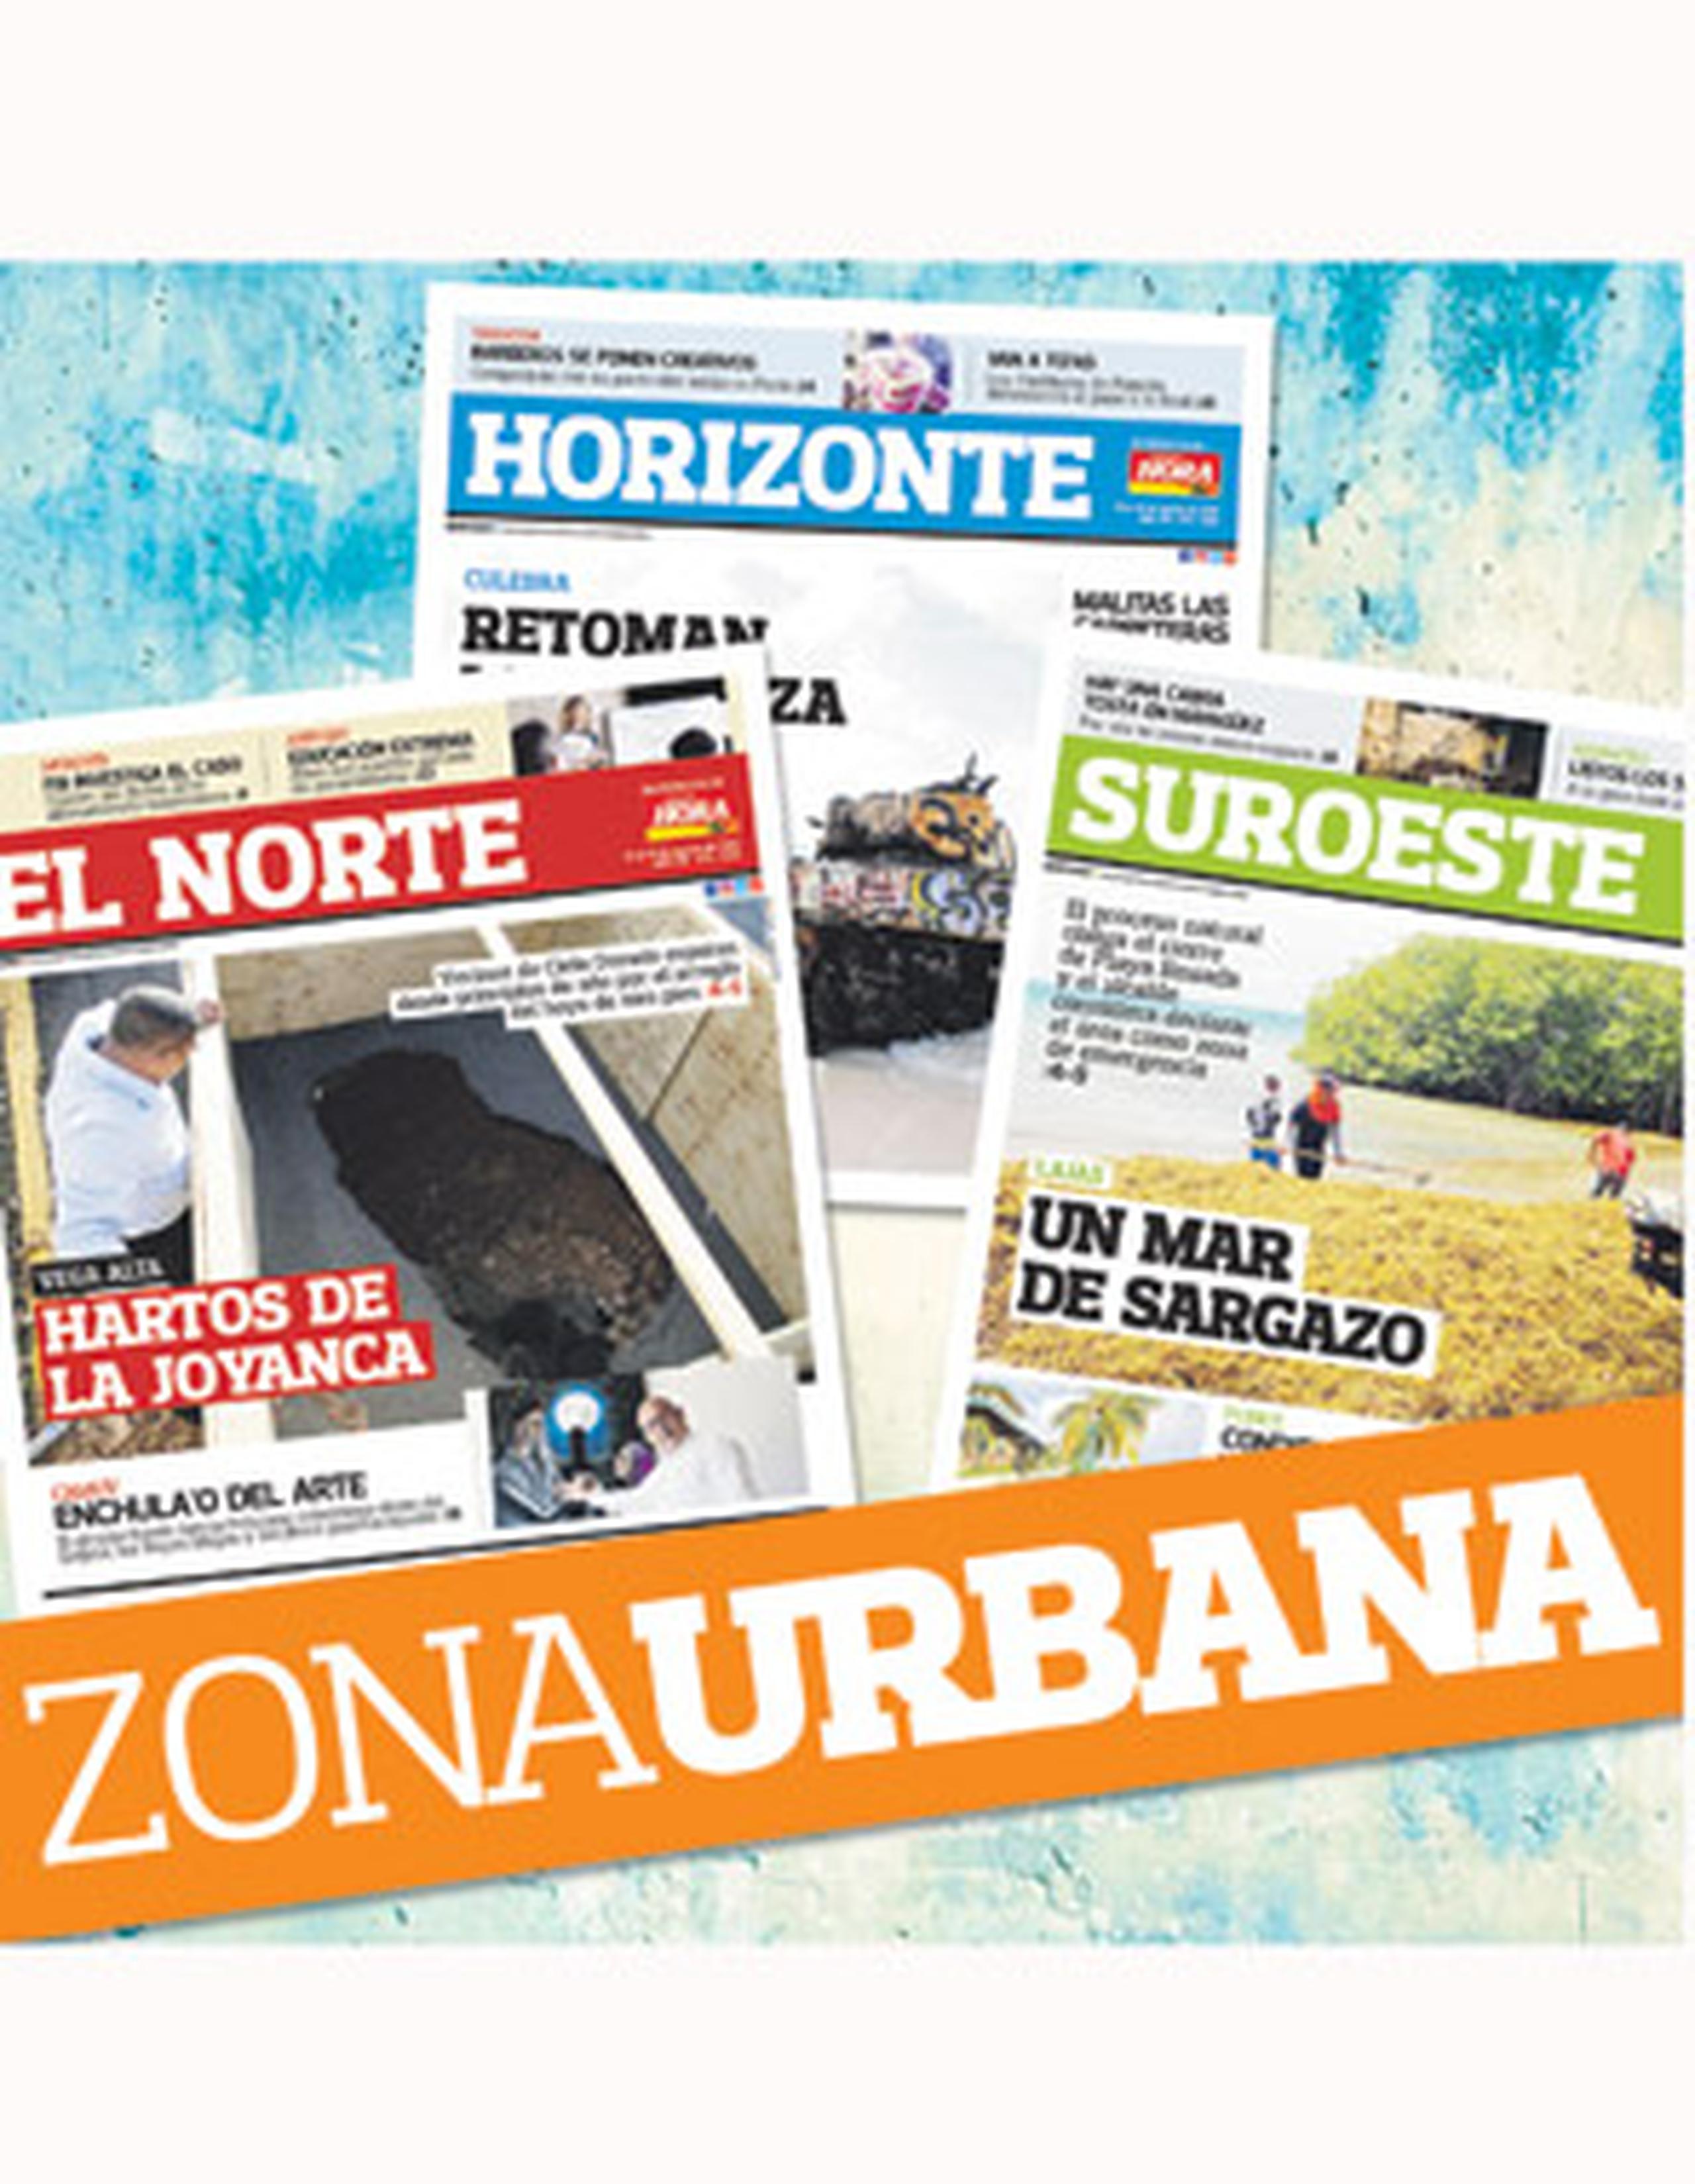 Zona Urbana se suma a la familia de los regionales El Norte, Horizonte y Suroeste, de Primera Hora, que presentan las noticias de tu pueblo y de tu comunidad.